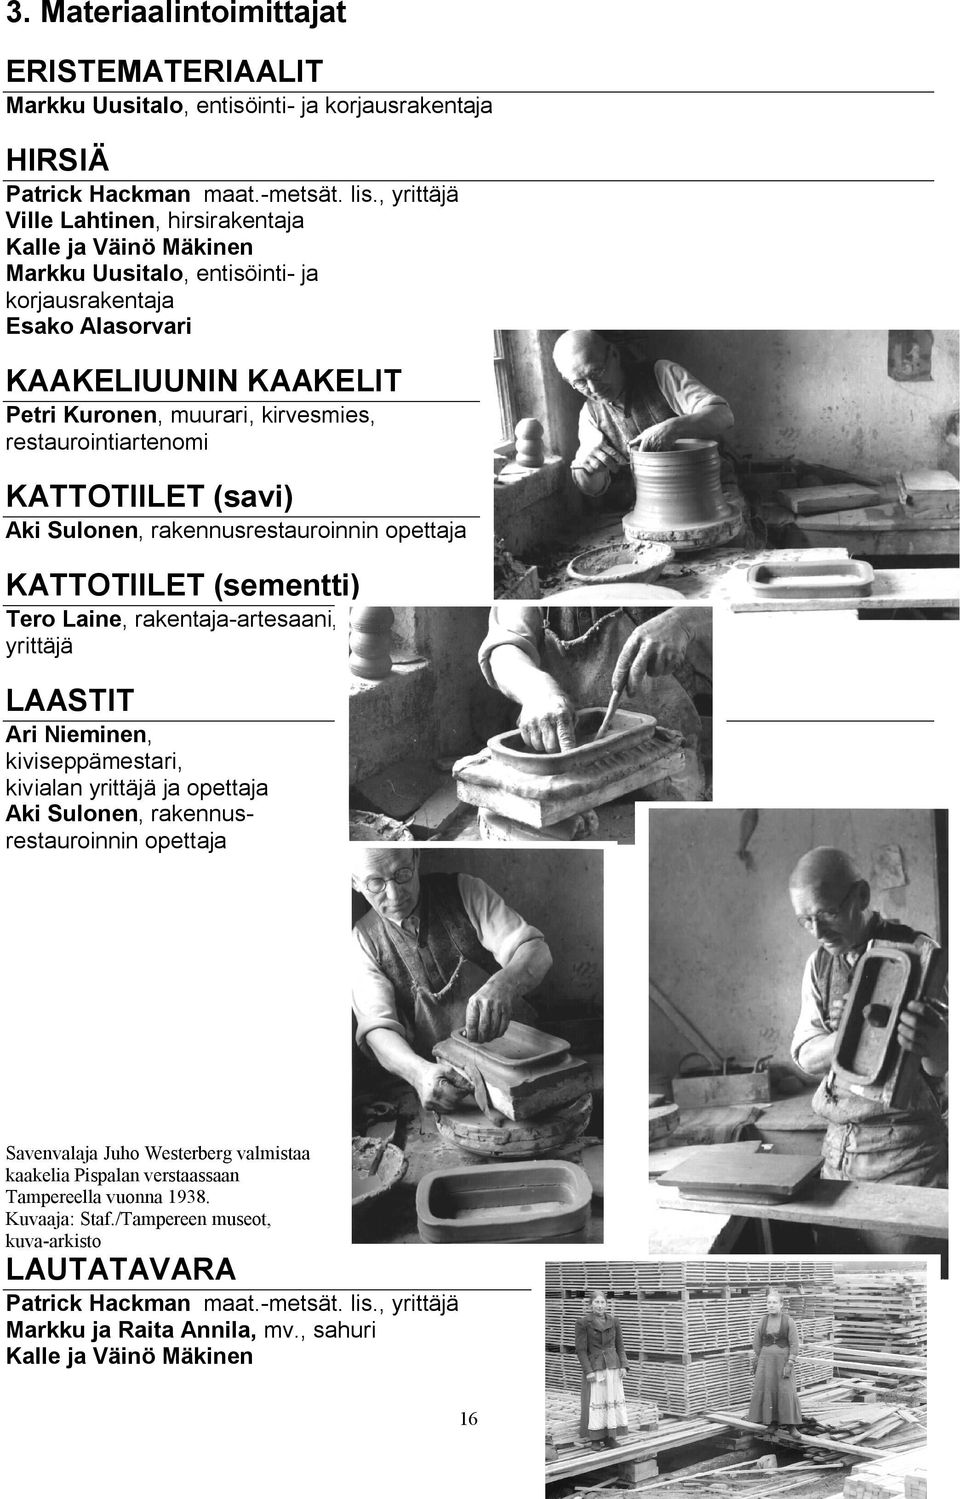 restaurointiartenomi KATTOTIILET (savi) Aki Sulonen, rakennusrestauroinnin opettaja KATTOTIILET (sementti) Tero Laine, rakentaja artesaani, yrittäjä LAASTIT Ari Nieminen, kiviseppämestari, kivialan